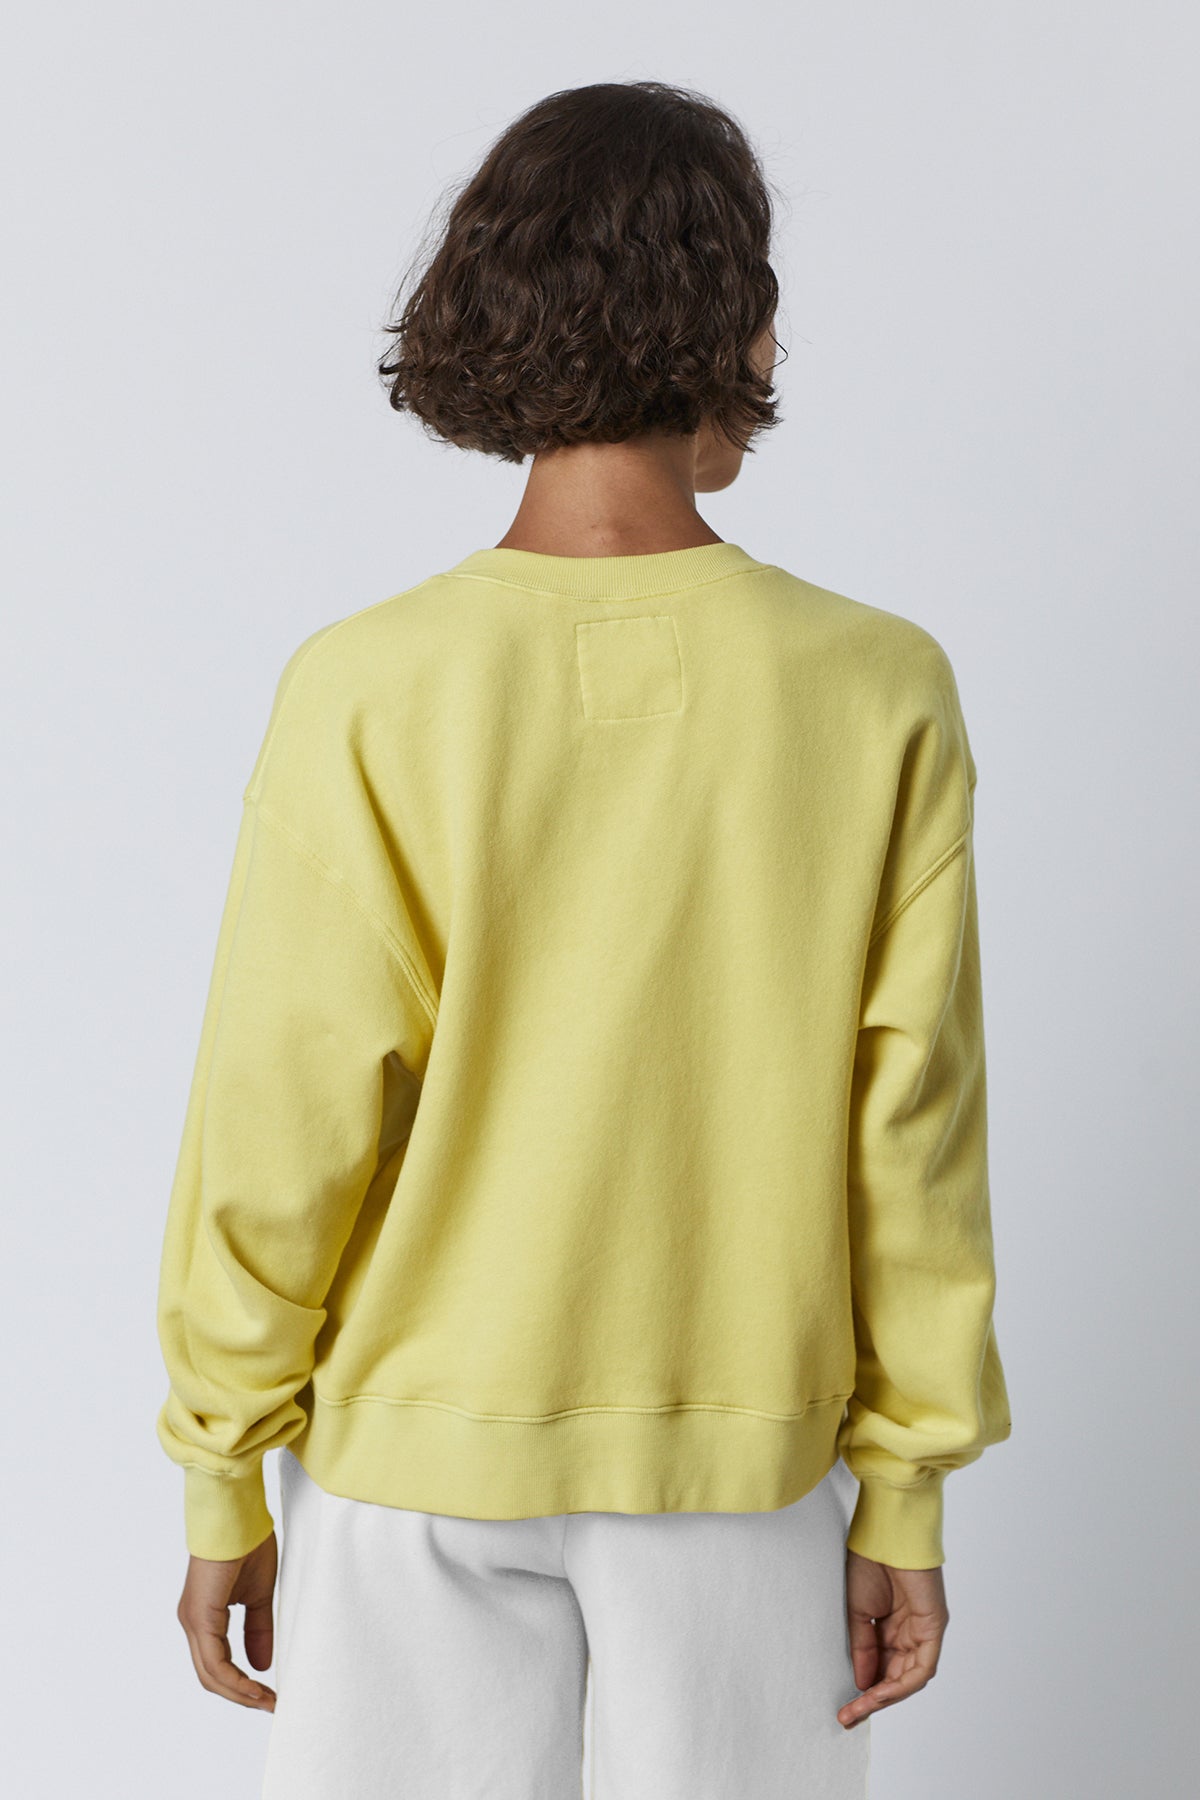   Ynez Sweatshirt in lemon yellow back 